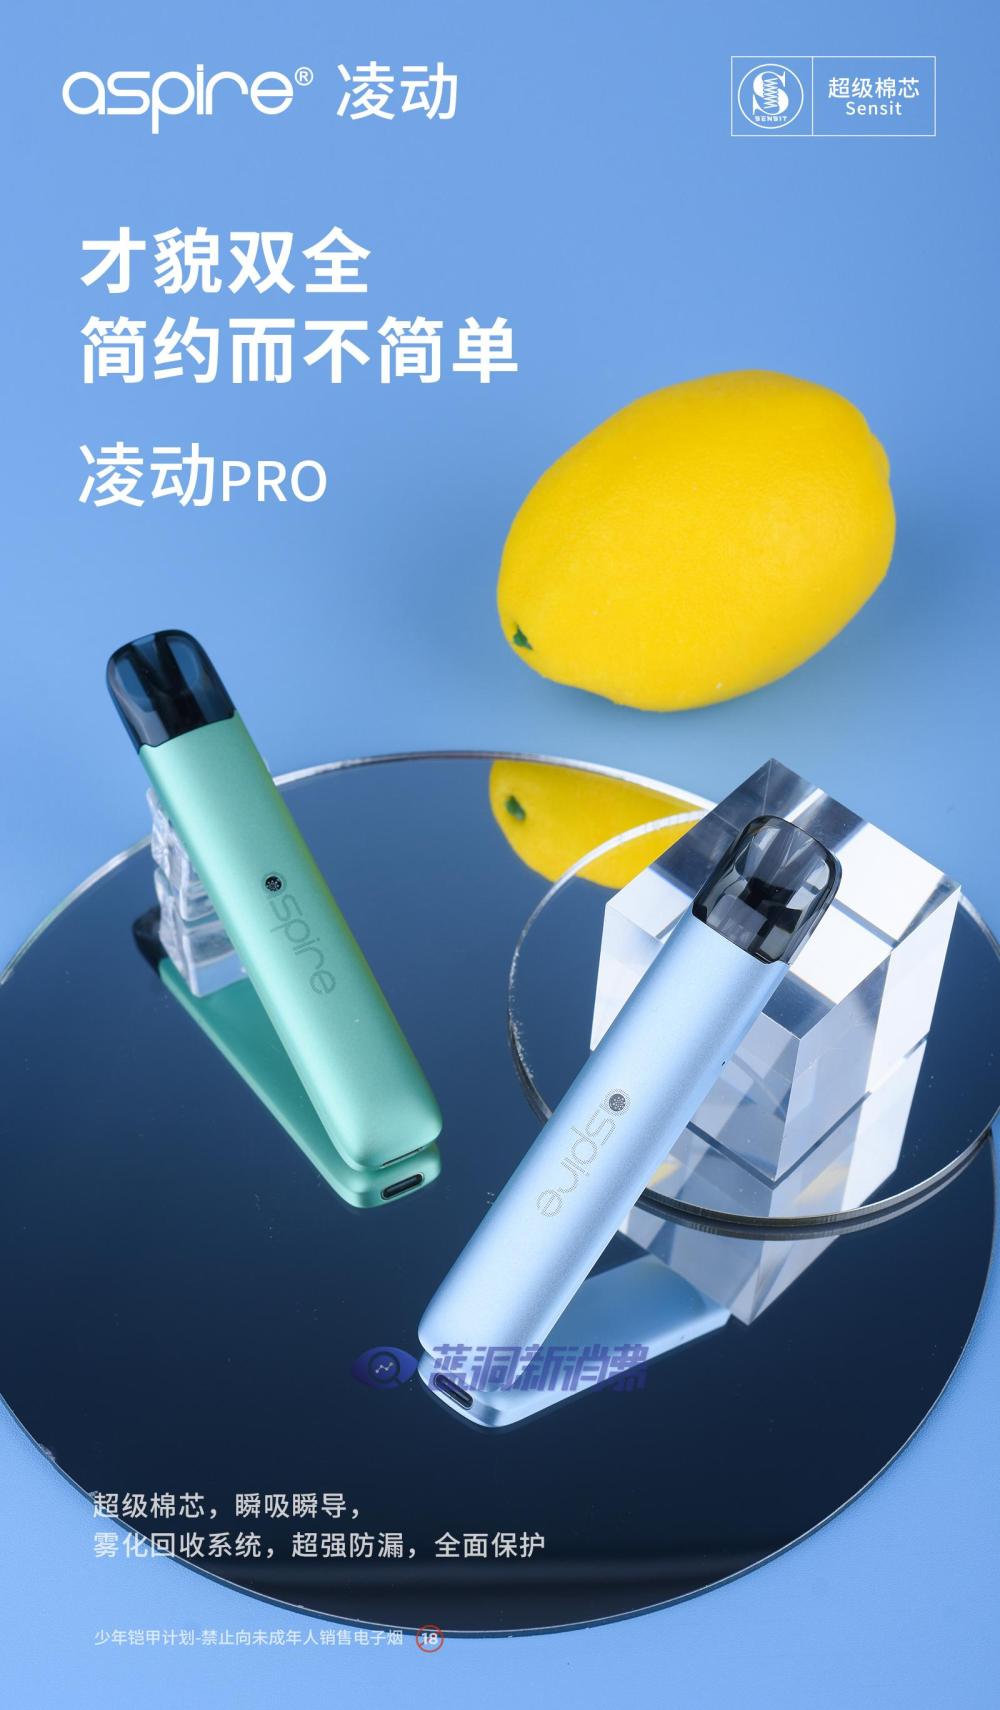 Aspire发布换弹新品凌动PRO：全面应用Sensit棉芯雾化解决方案 